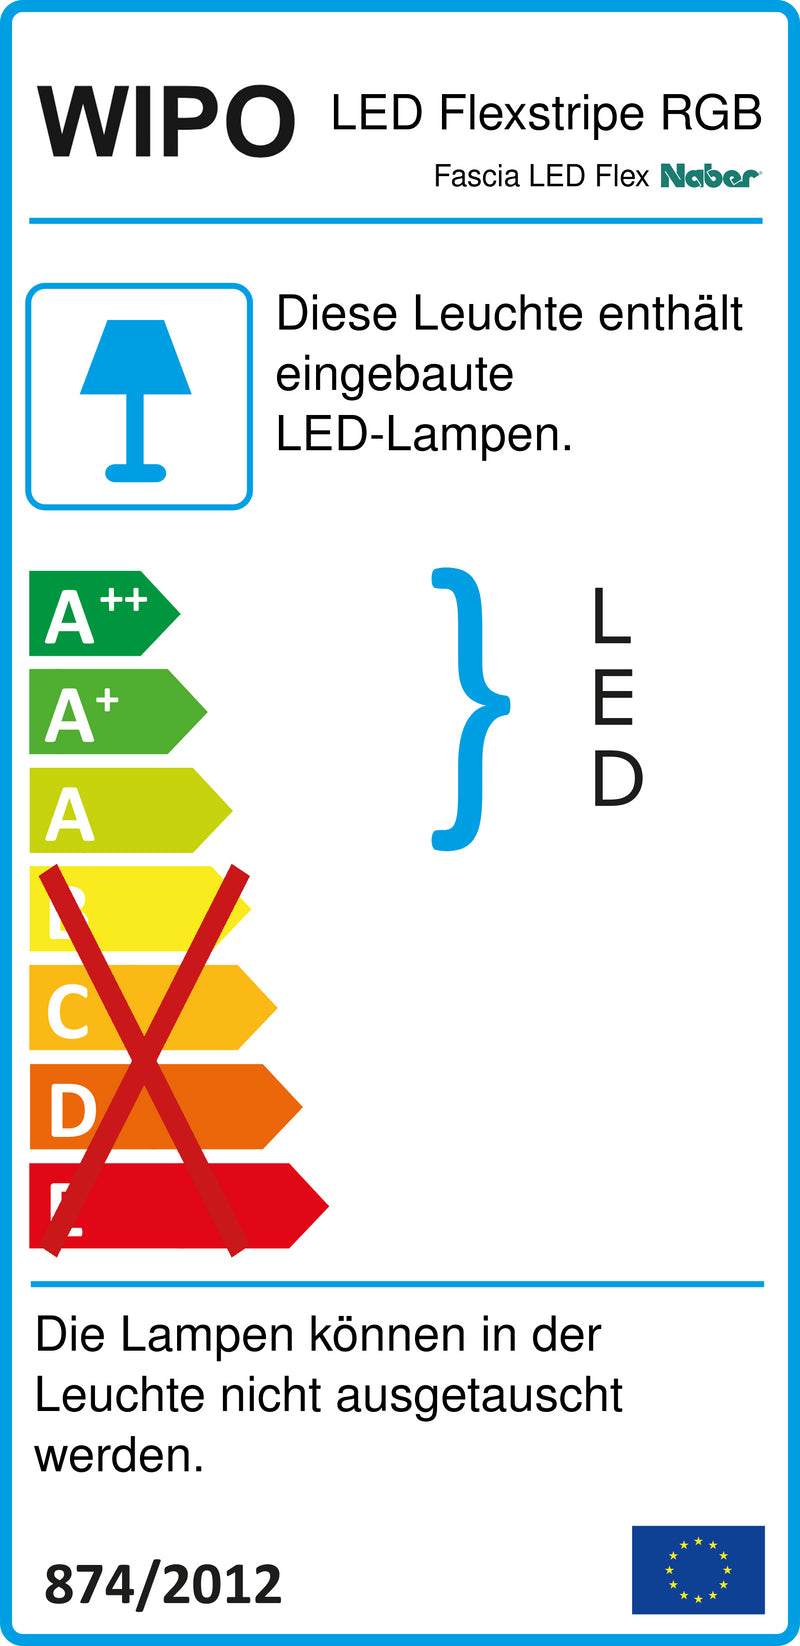 E-Label zu Zeichnung zu Fascia LED Flex Stripes RGB als Variante L 1200 mm von Naber GmbH in der Kategorie Lichttechnik in Österreich auf conceptshop.at